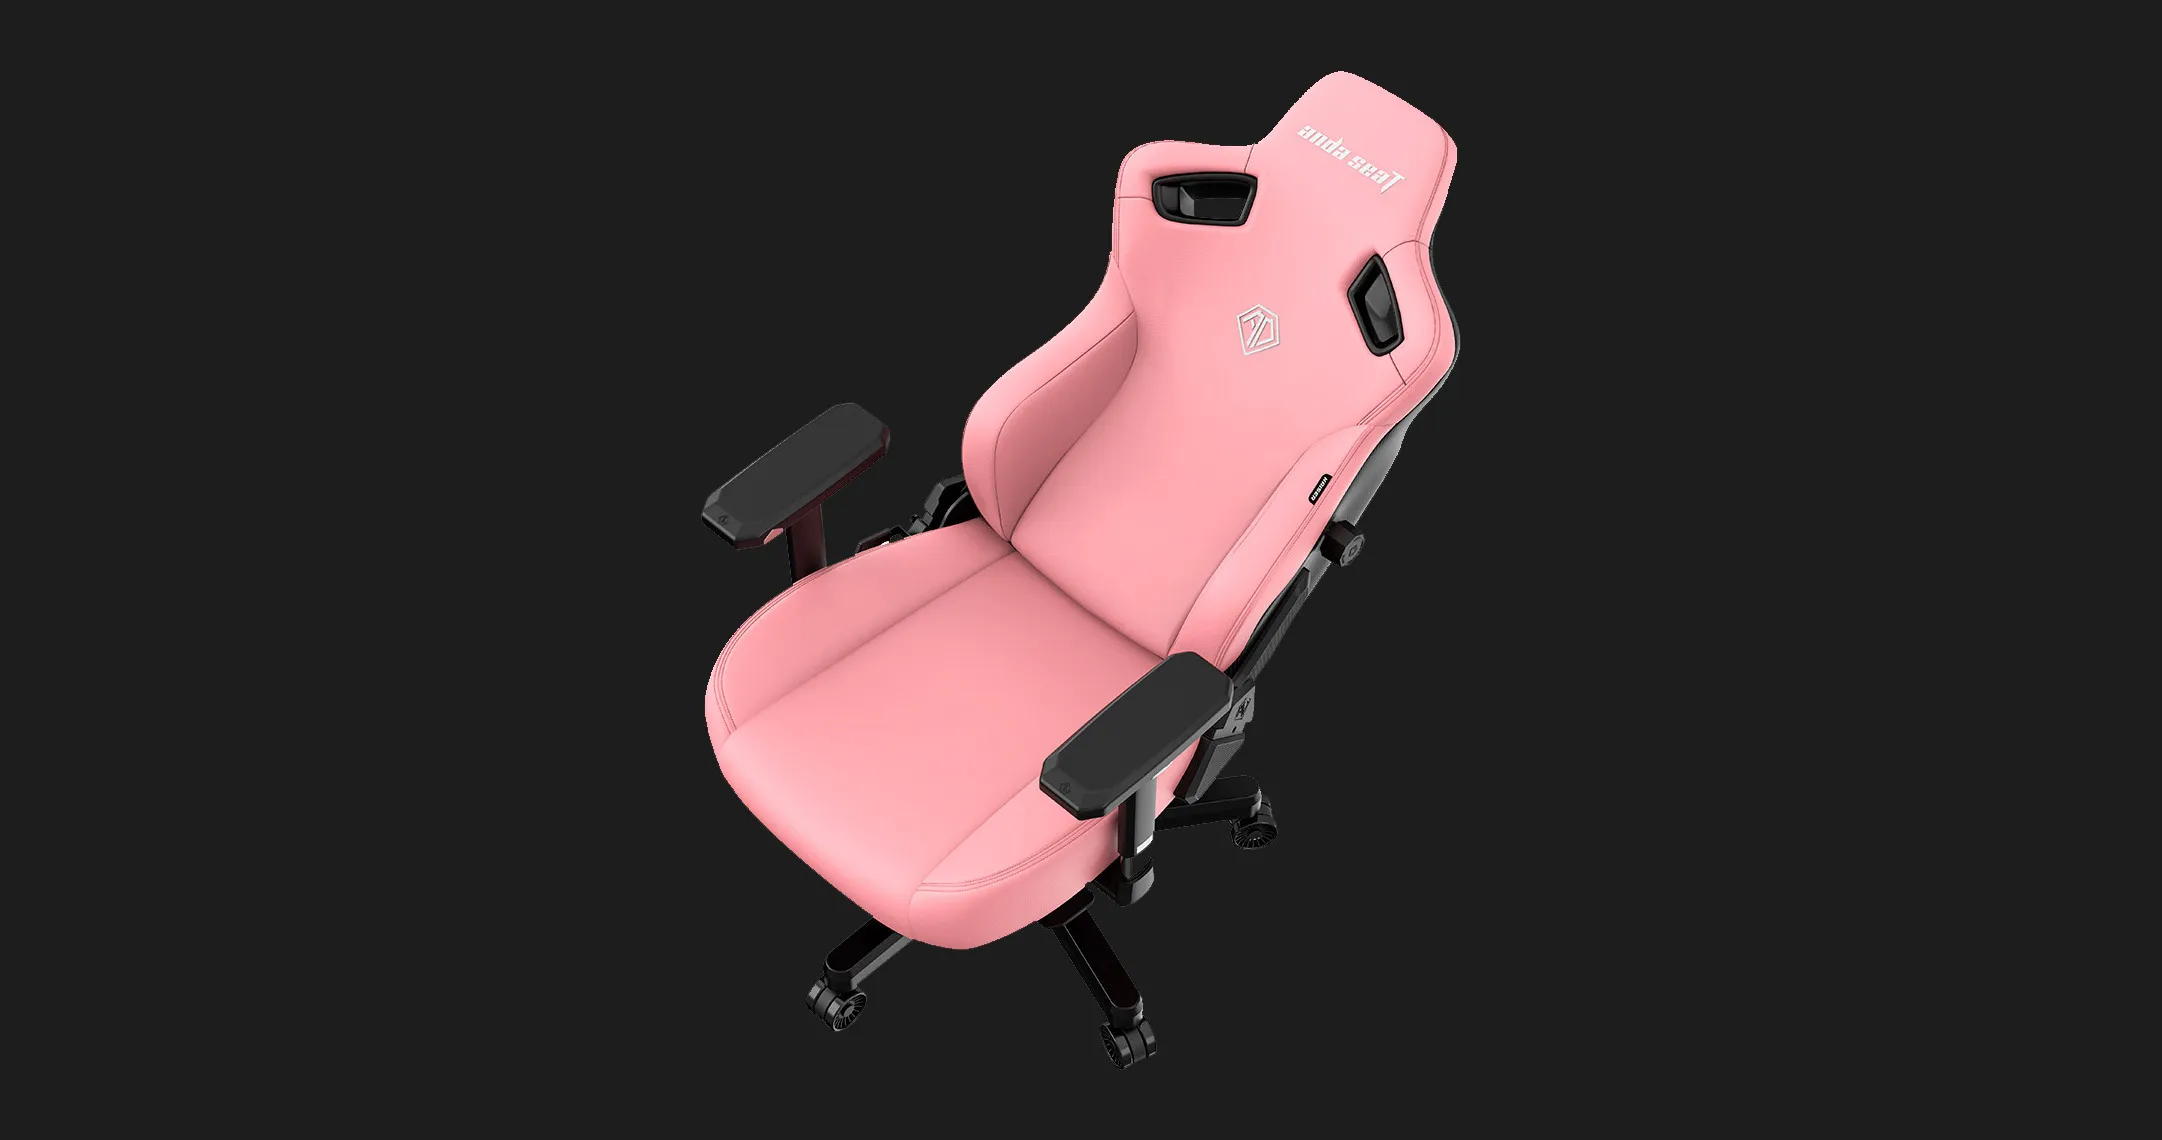 Кресло для геймеров Anda Seat Kaiser 3 Size XL (White)